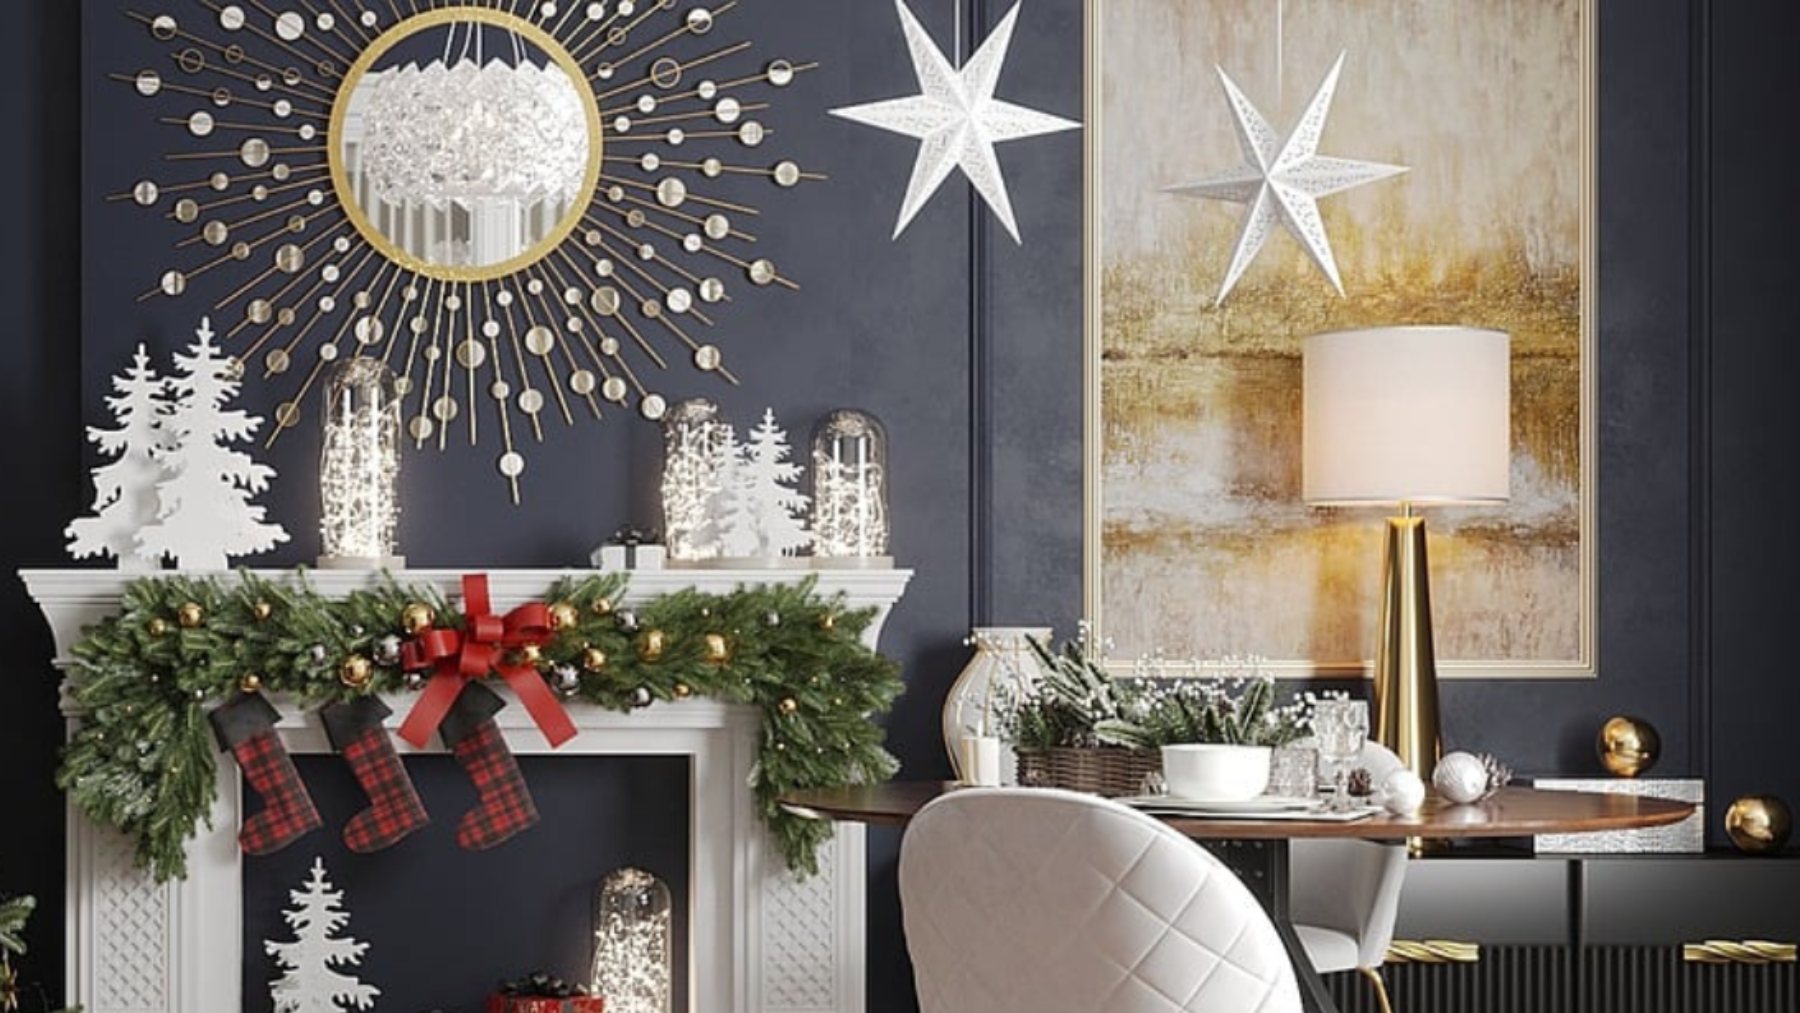 9 originales ideas para decorar casas pequeñas estas Navidades